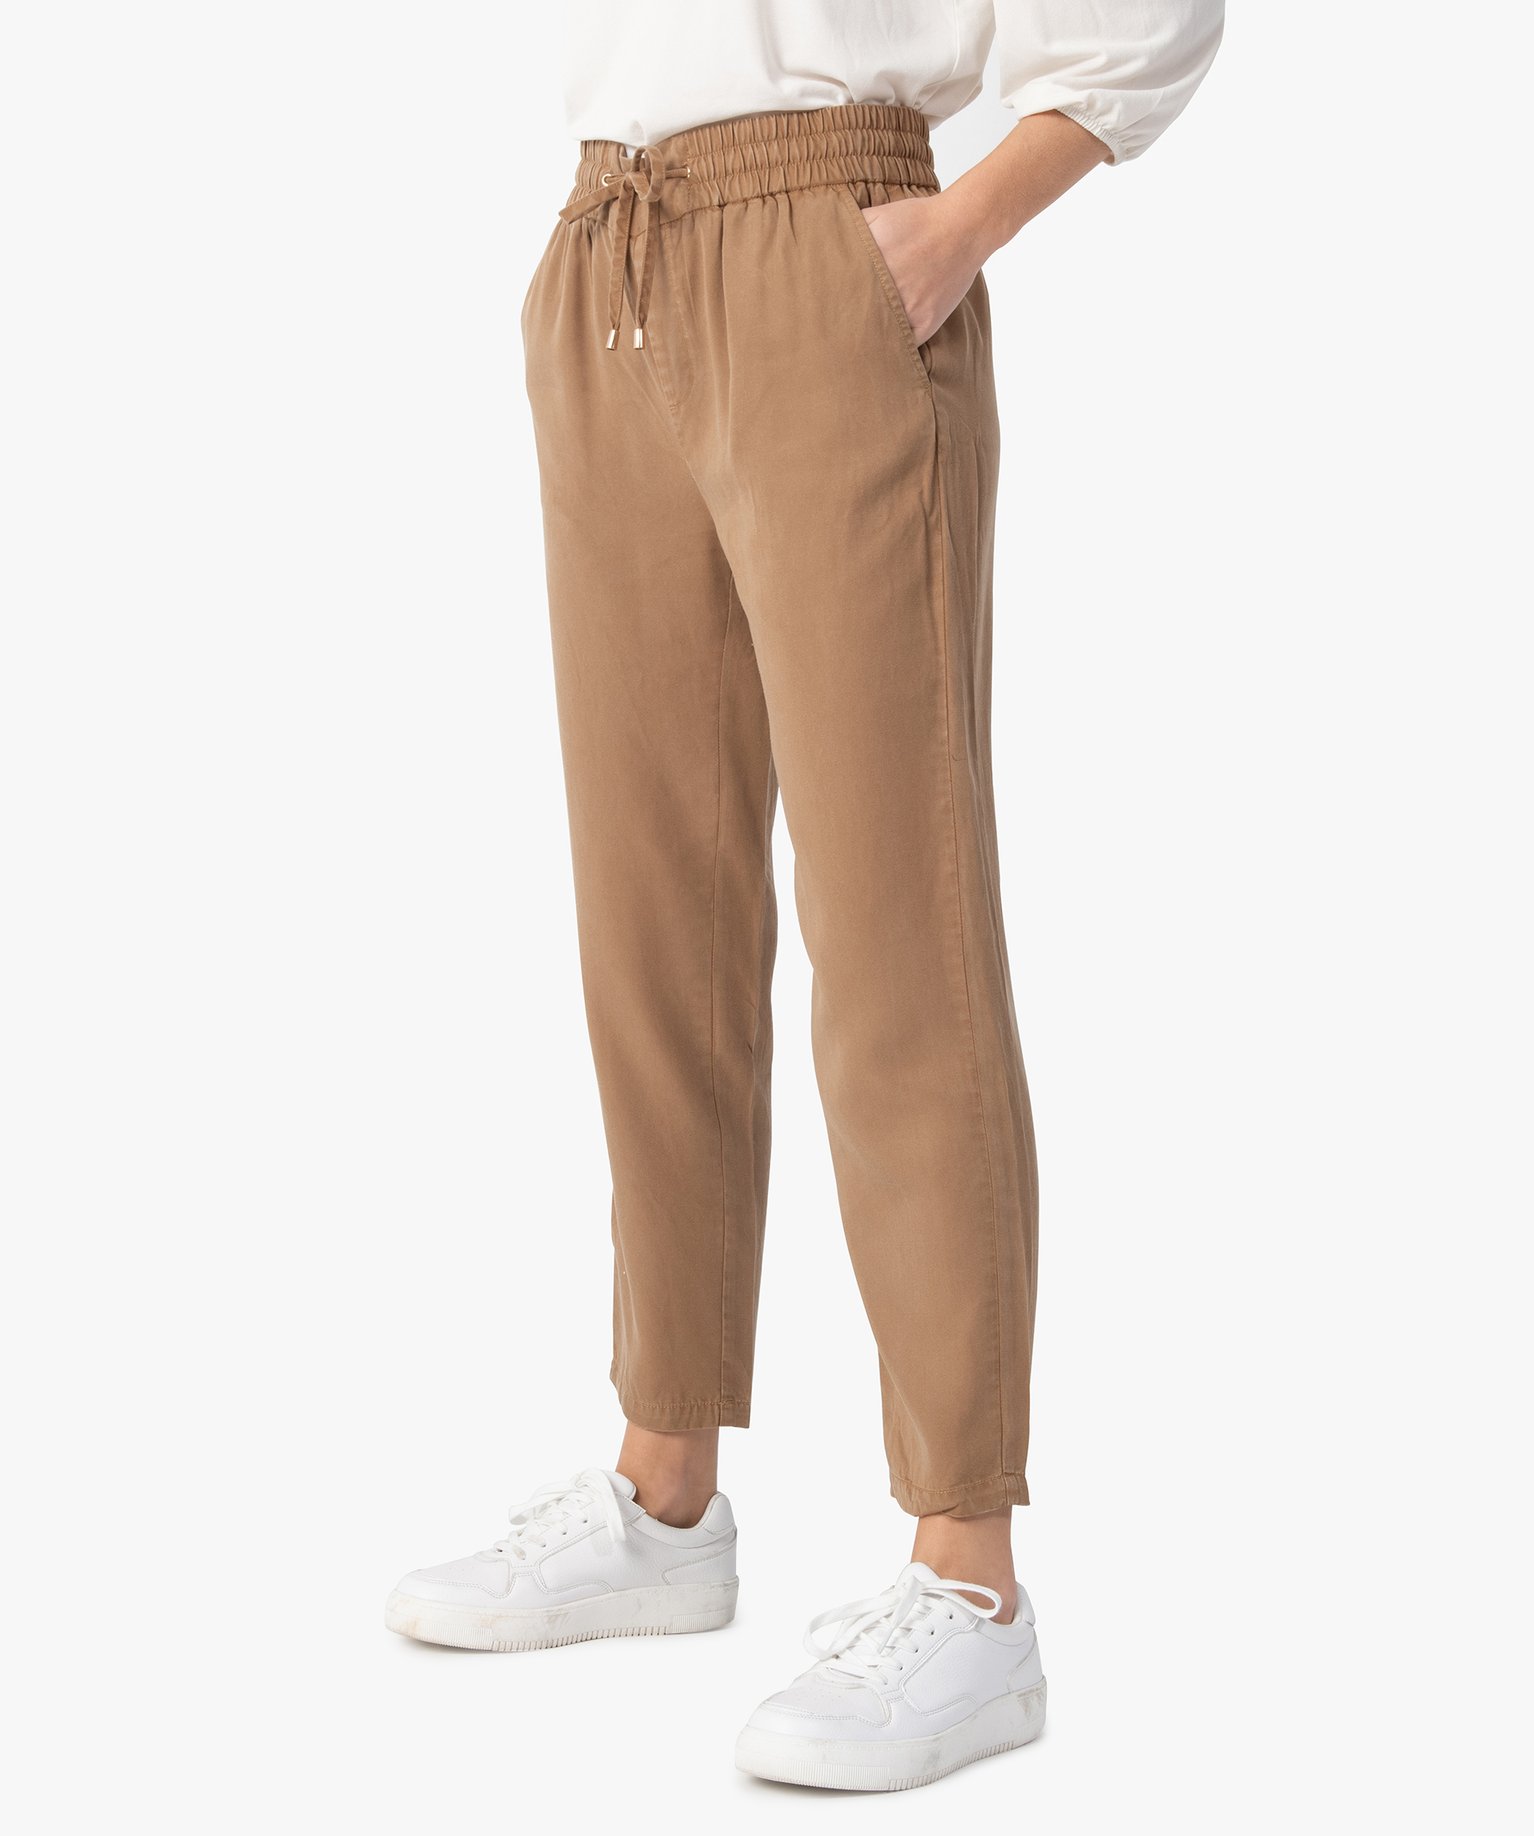 pantalon femme avec large ceinture elastiquee beige pantalons